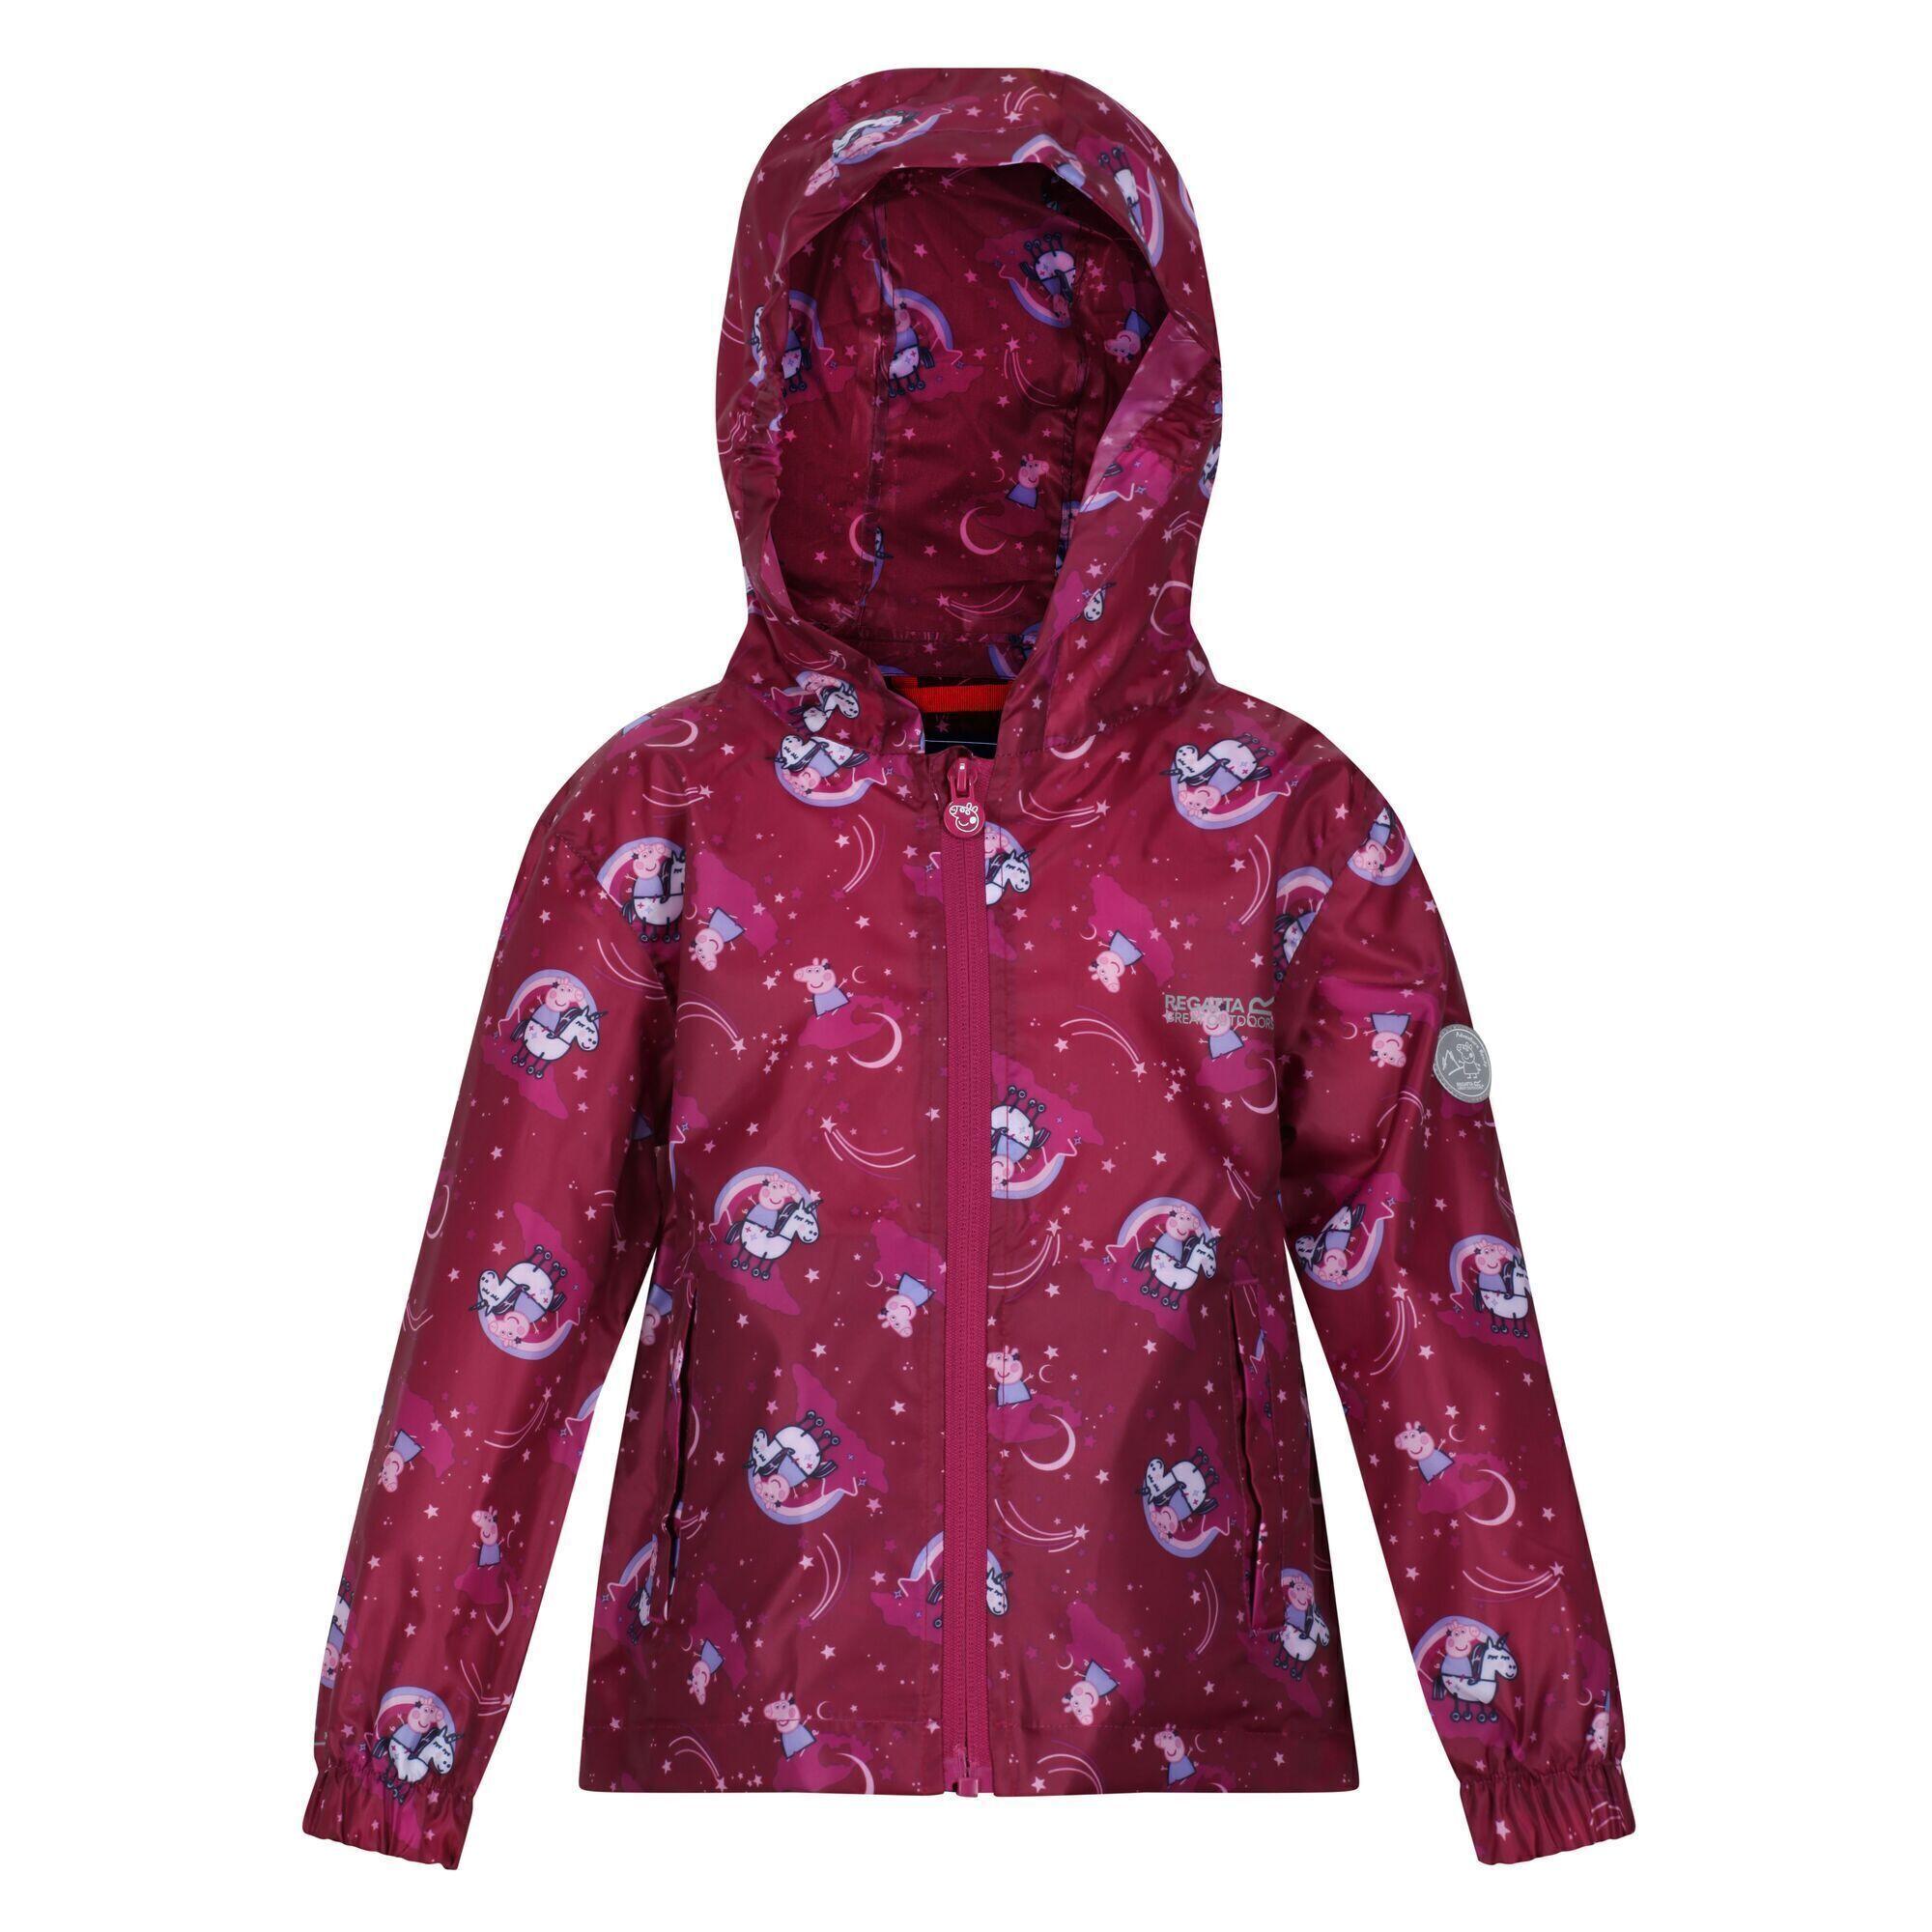 REGATTA Childrens/Kids Peppa Pig Packaway Waterproof Jacket (Raspberry Radiance)